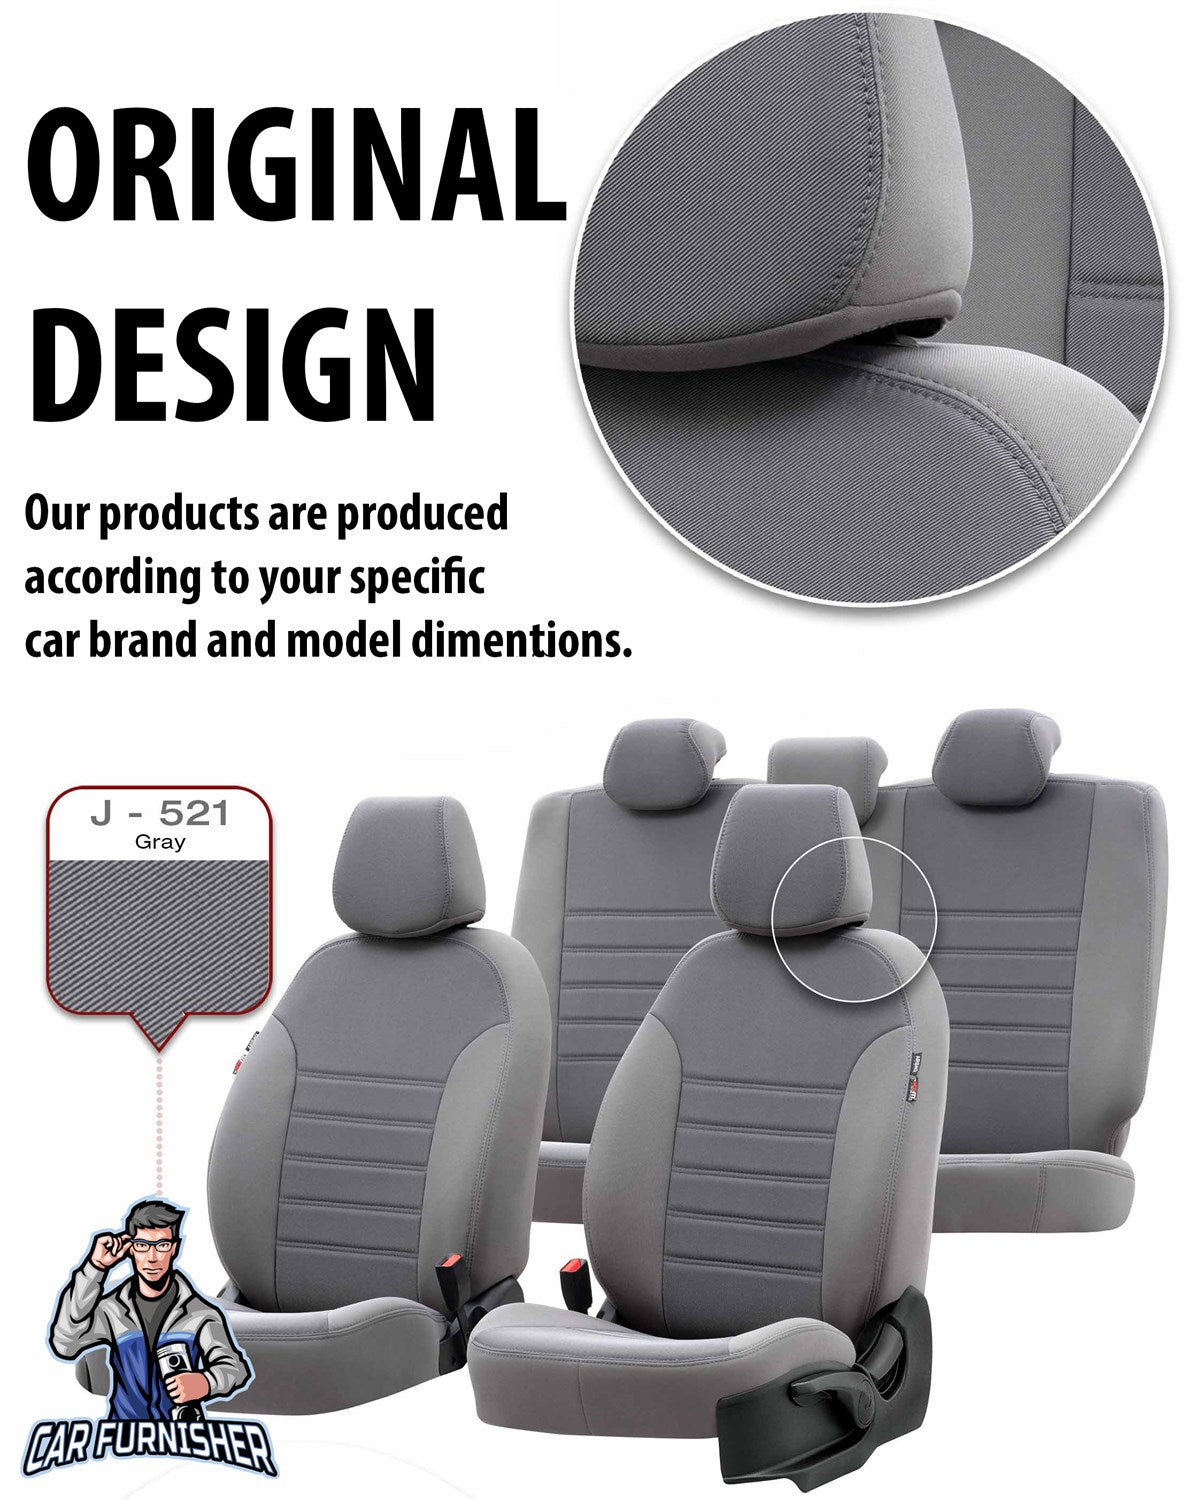 Suzuki Grand Vitara Seat Covers Original Jacquard Design Smoked Jacquard Fabric